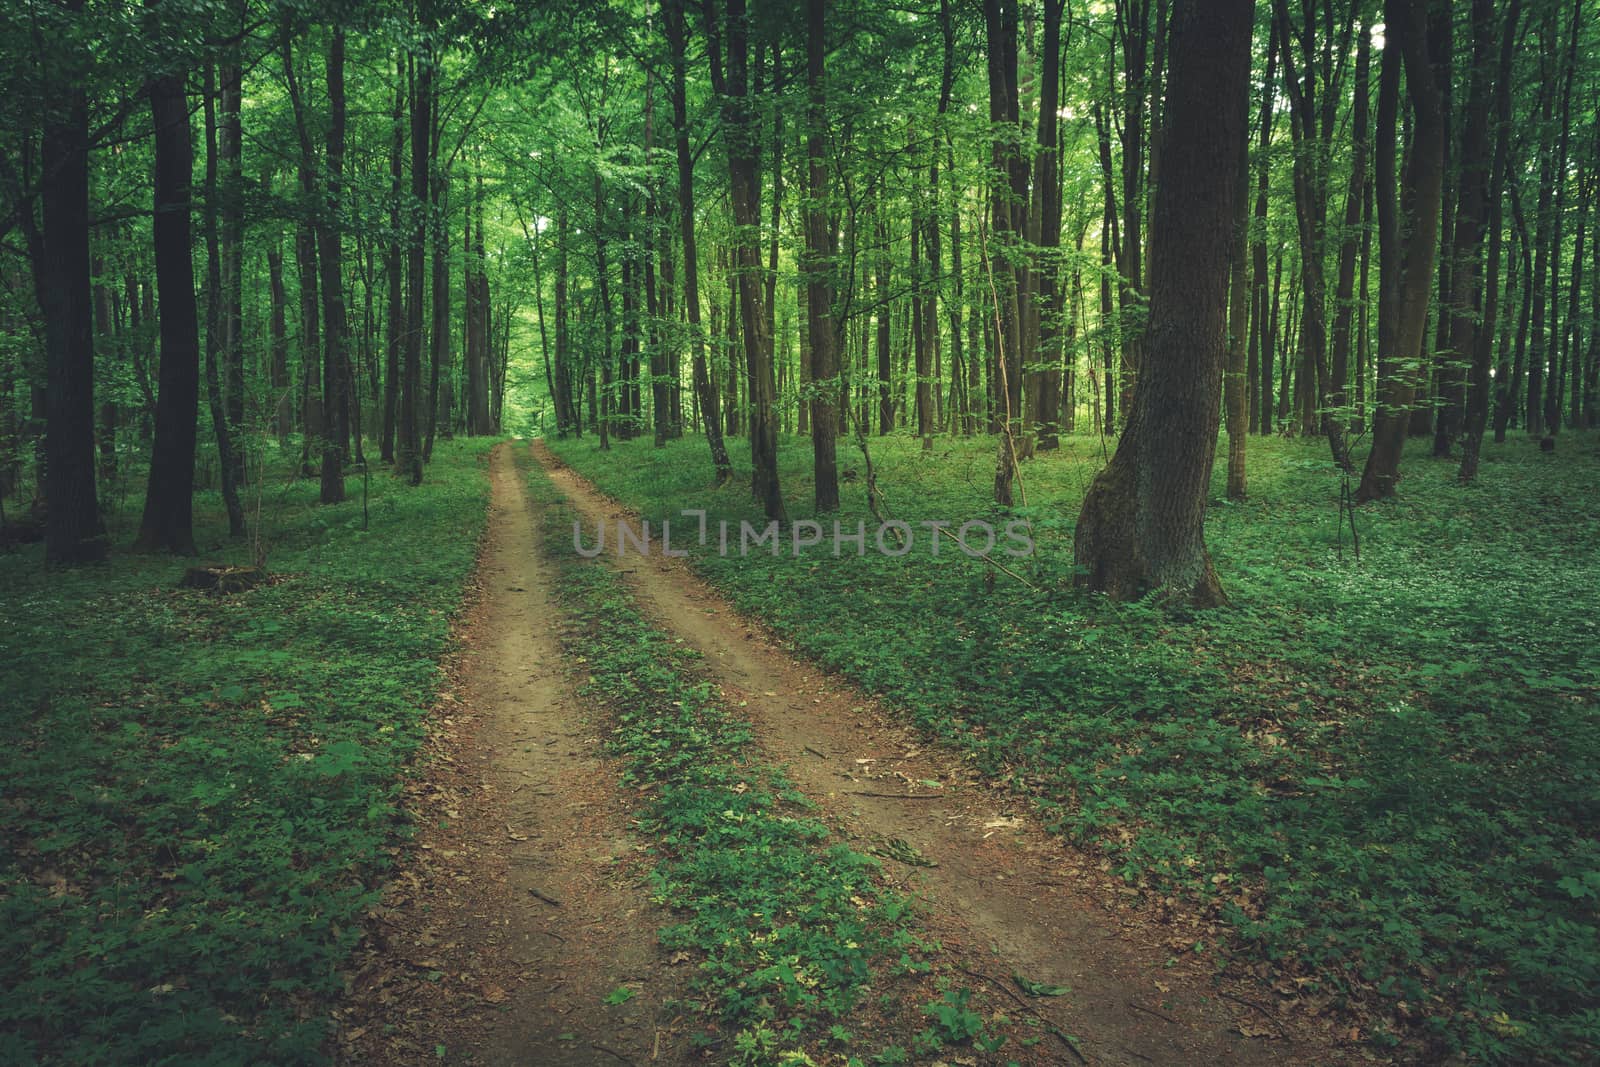 Ground road through green leafy dark forest by darekb22